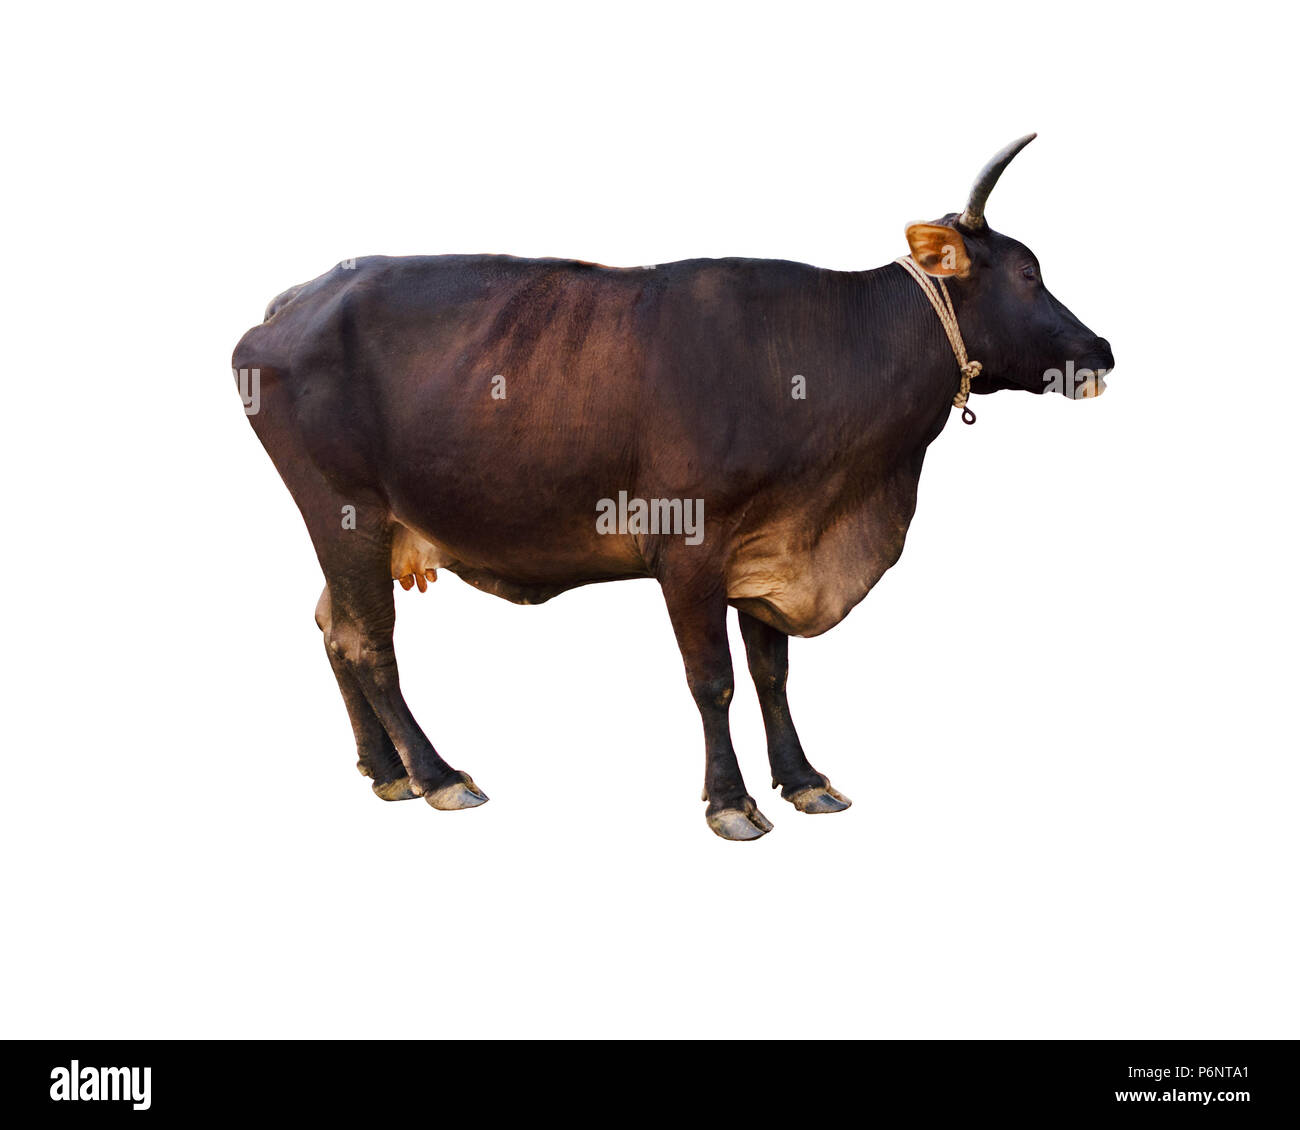 Mucca selvatica di color marrone scuro australiano sahiwal Frisone o Kasargod razza nana, isolato su sfondo bianco. Vista laterale. Weligama, Sri Lanka. Foto Stock